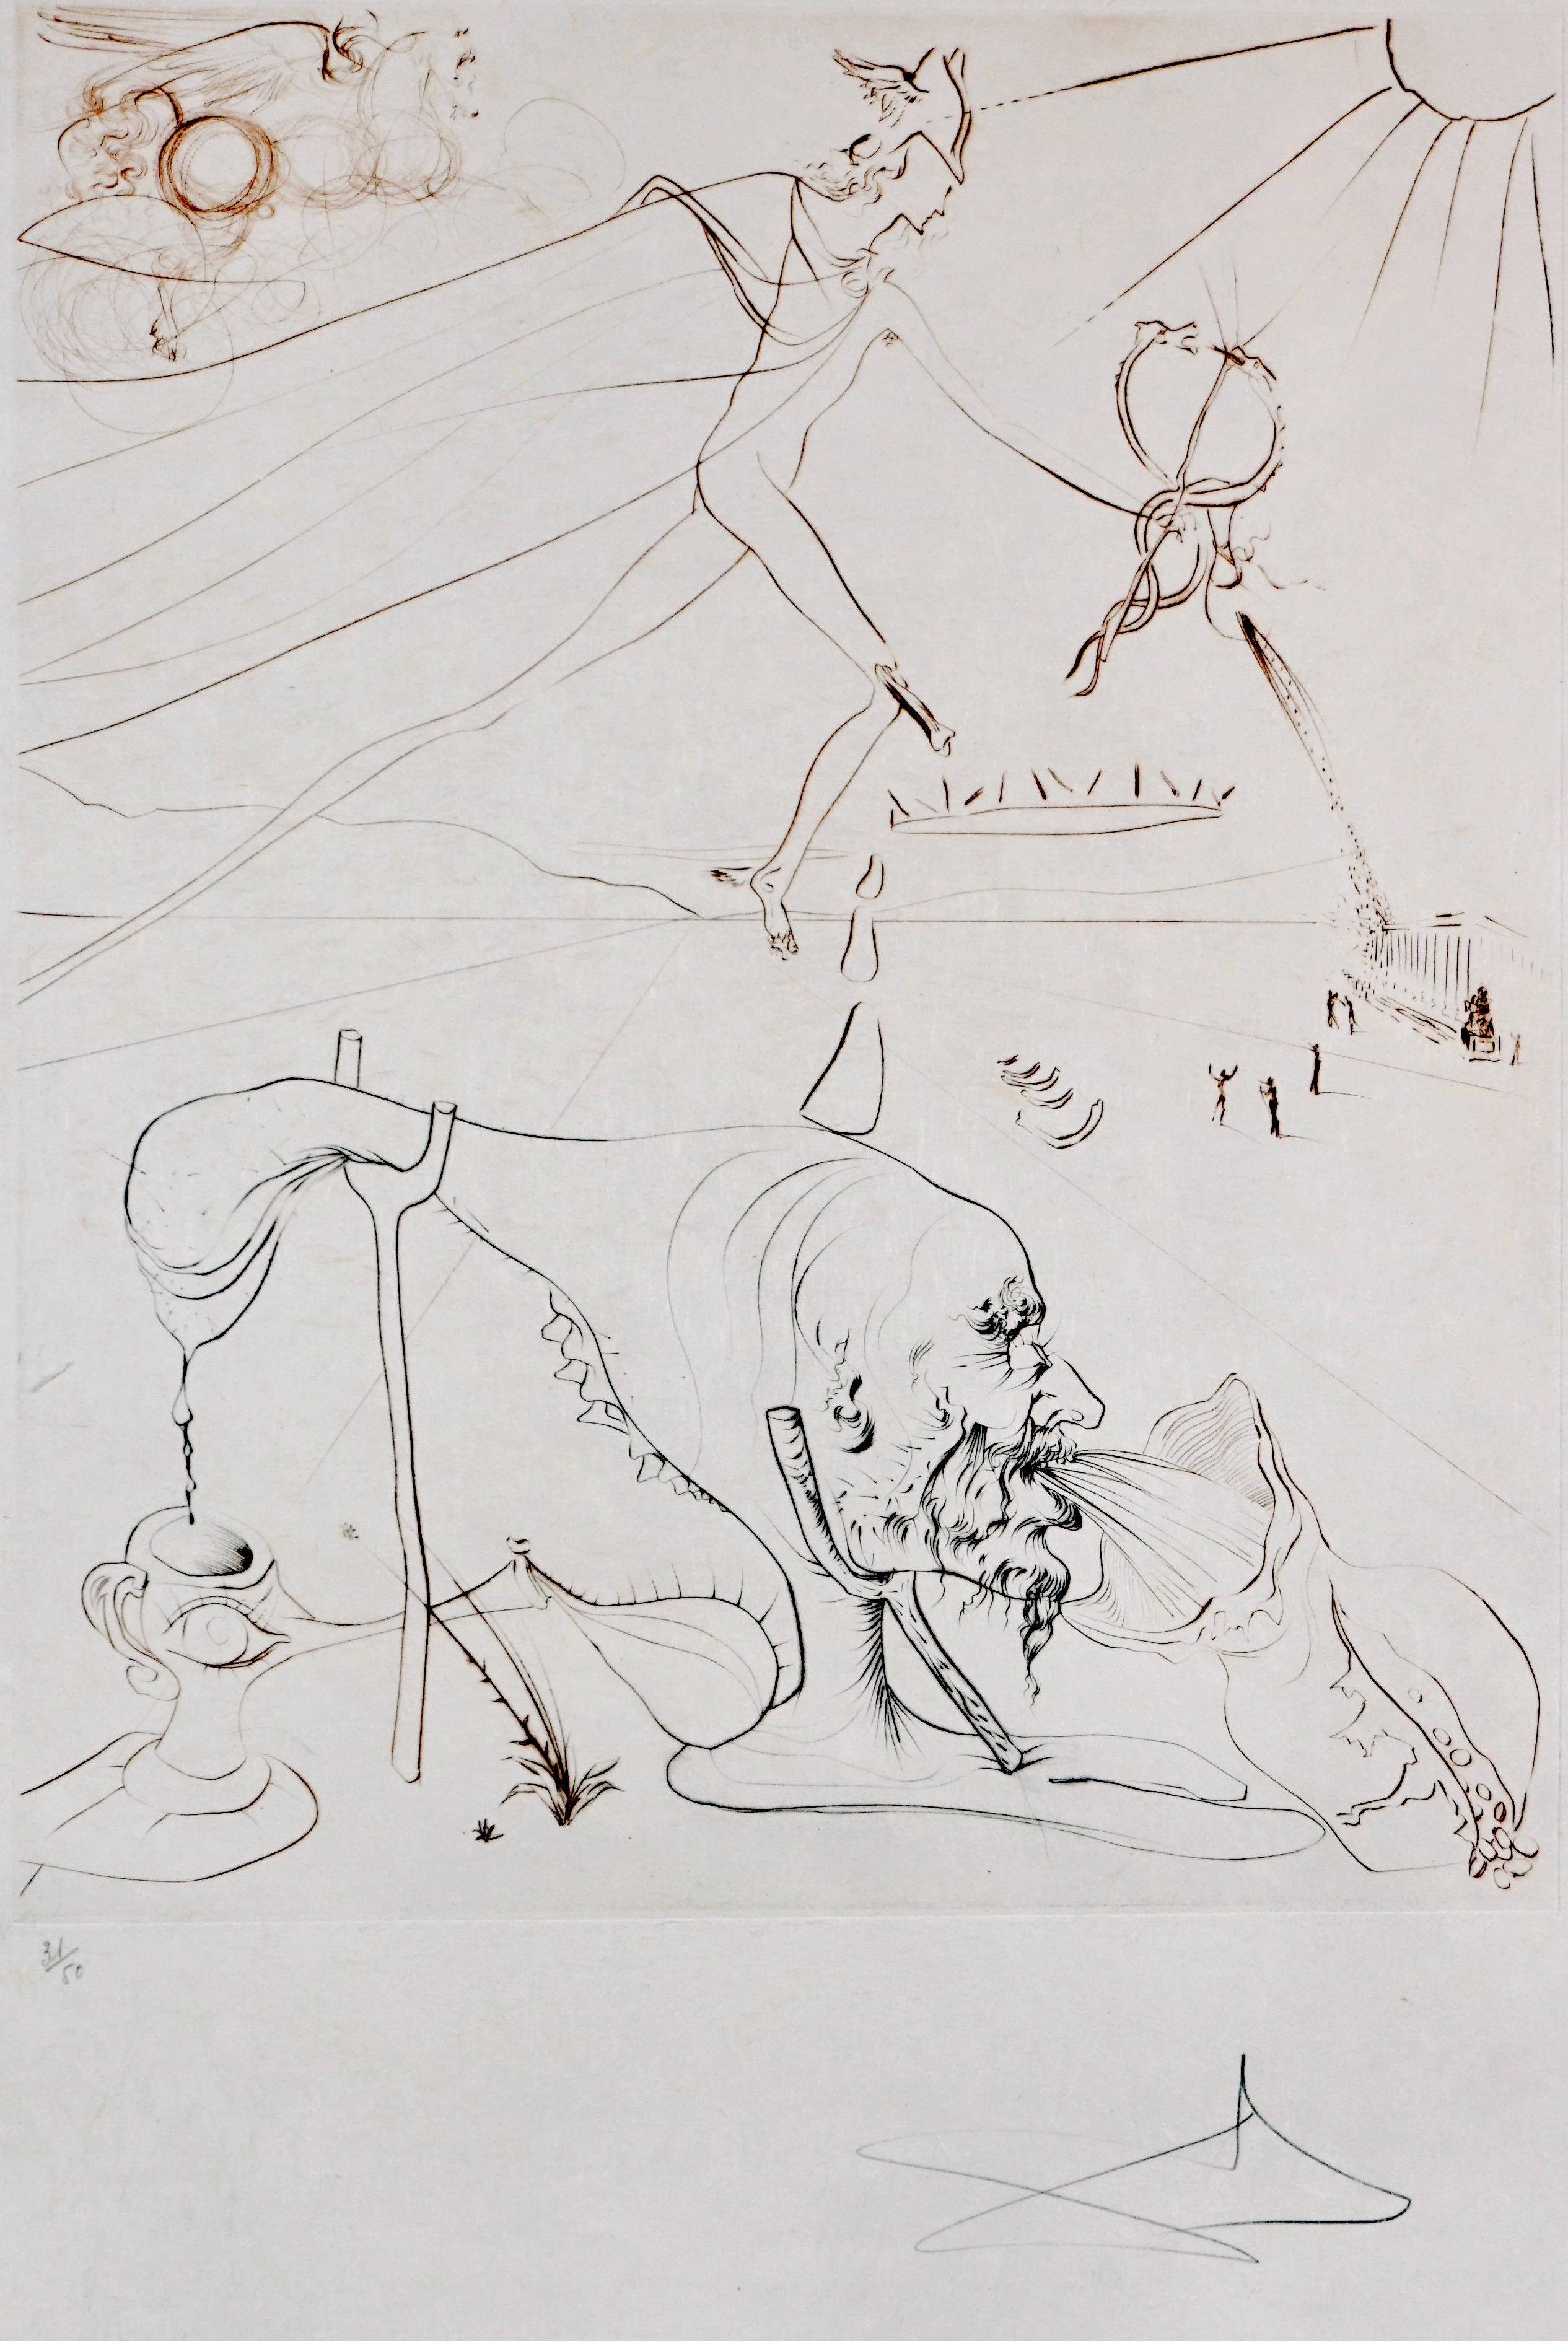 L’Alchimie  - Surrealist Print by Salvador Dalí